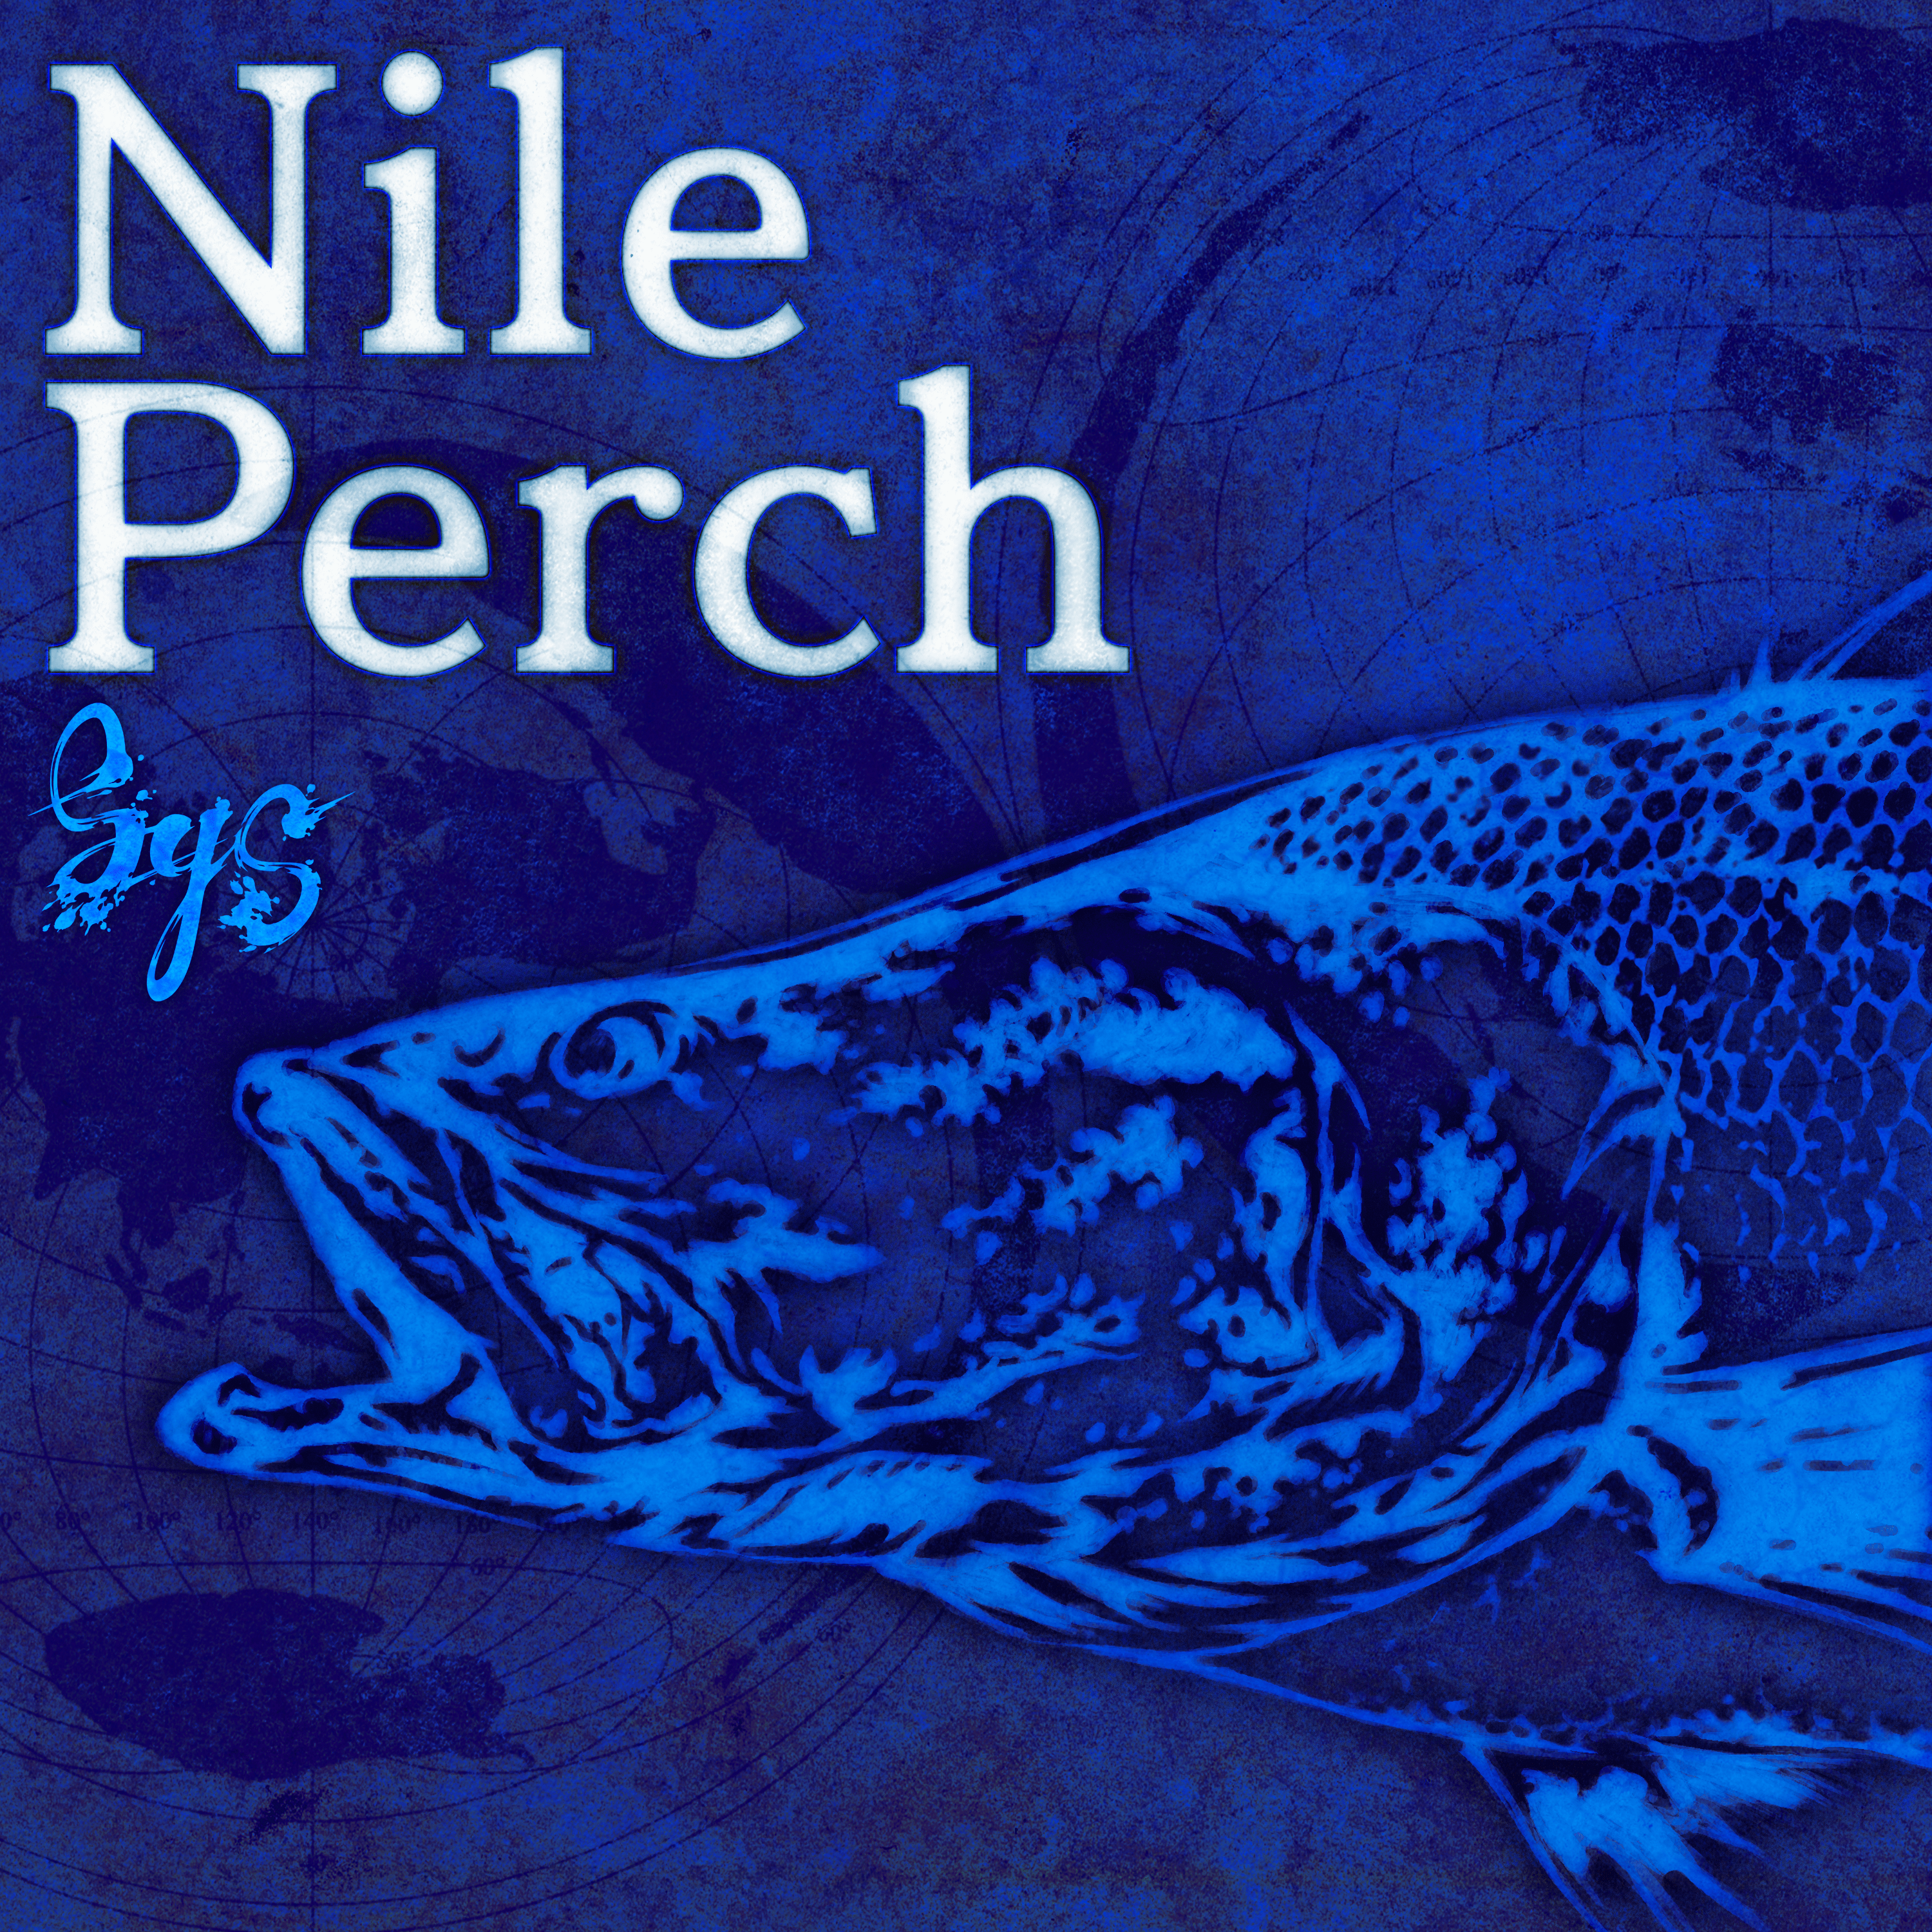 Nile Perch